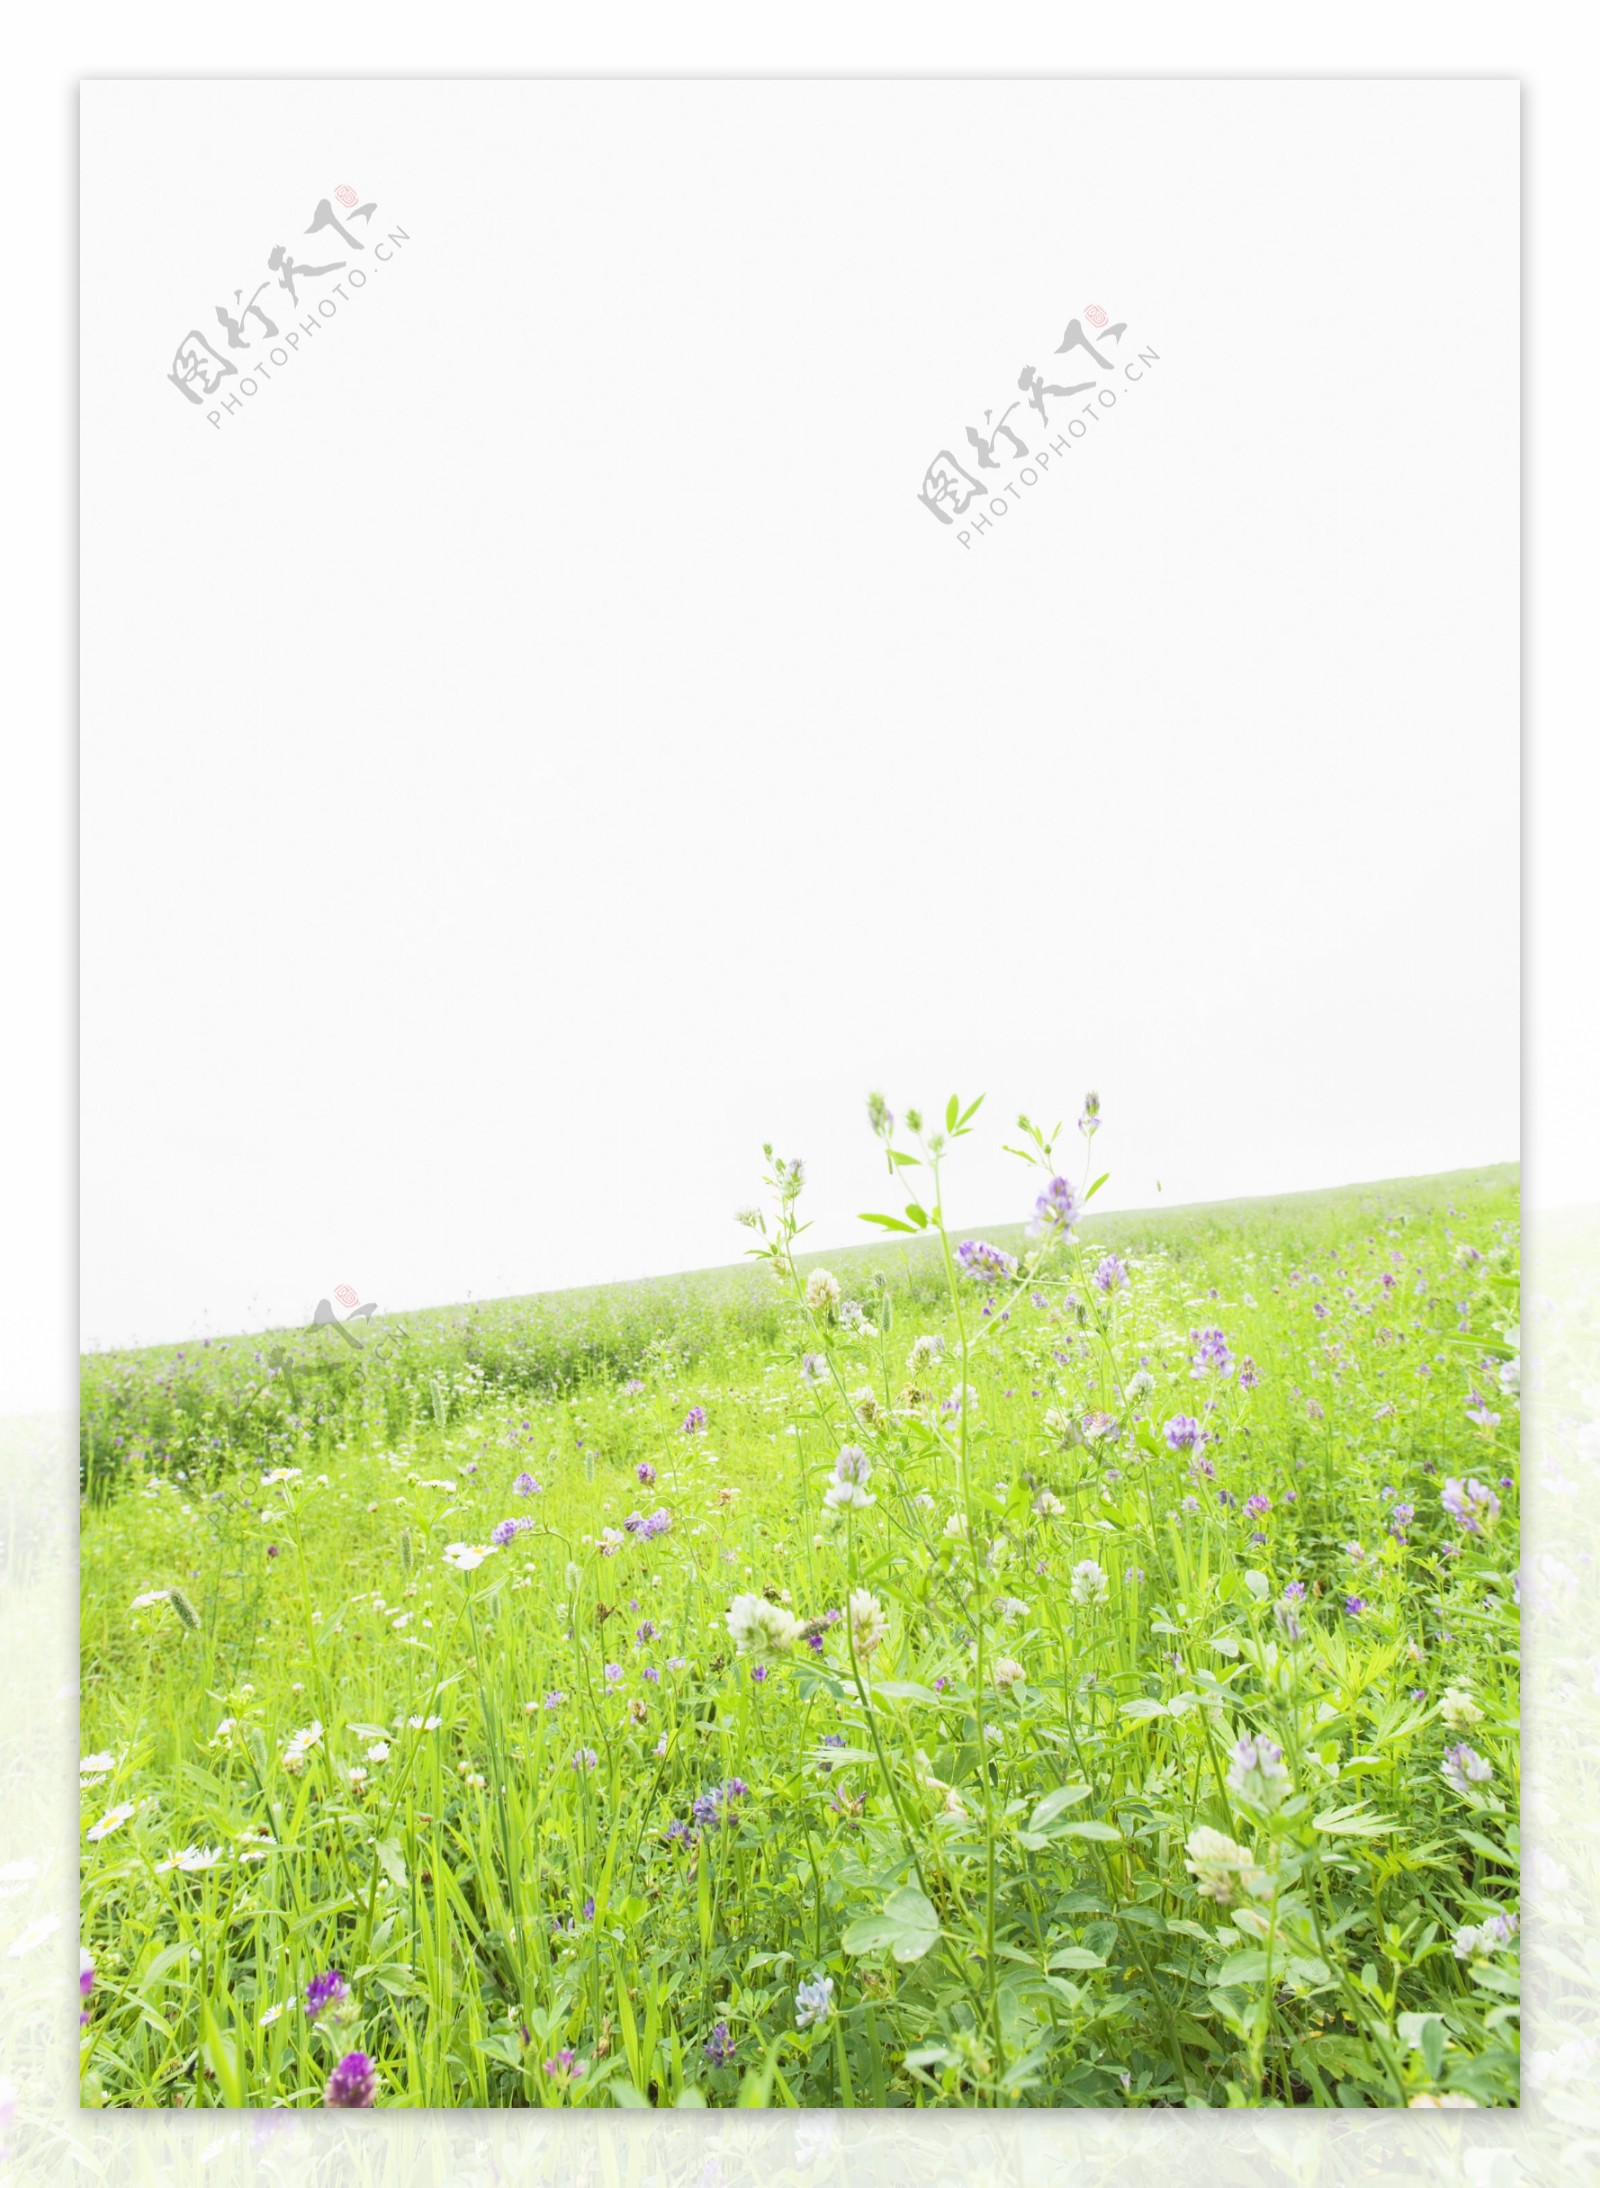 野花与草地摄影图片